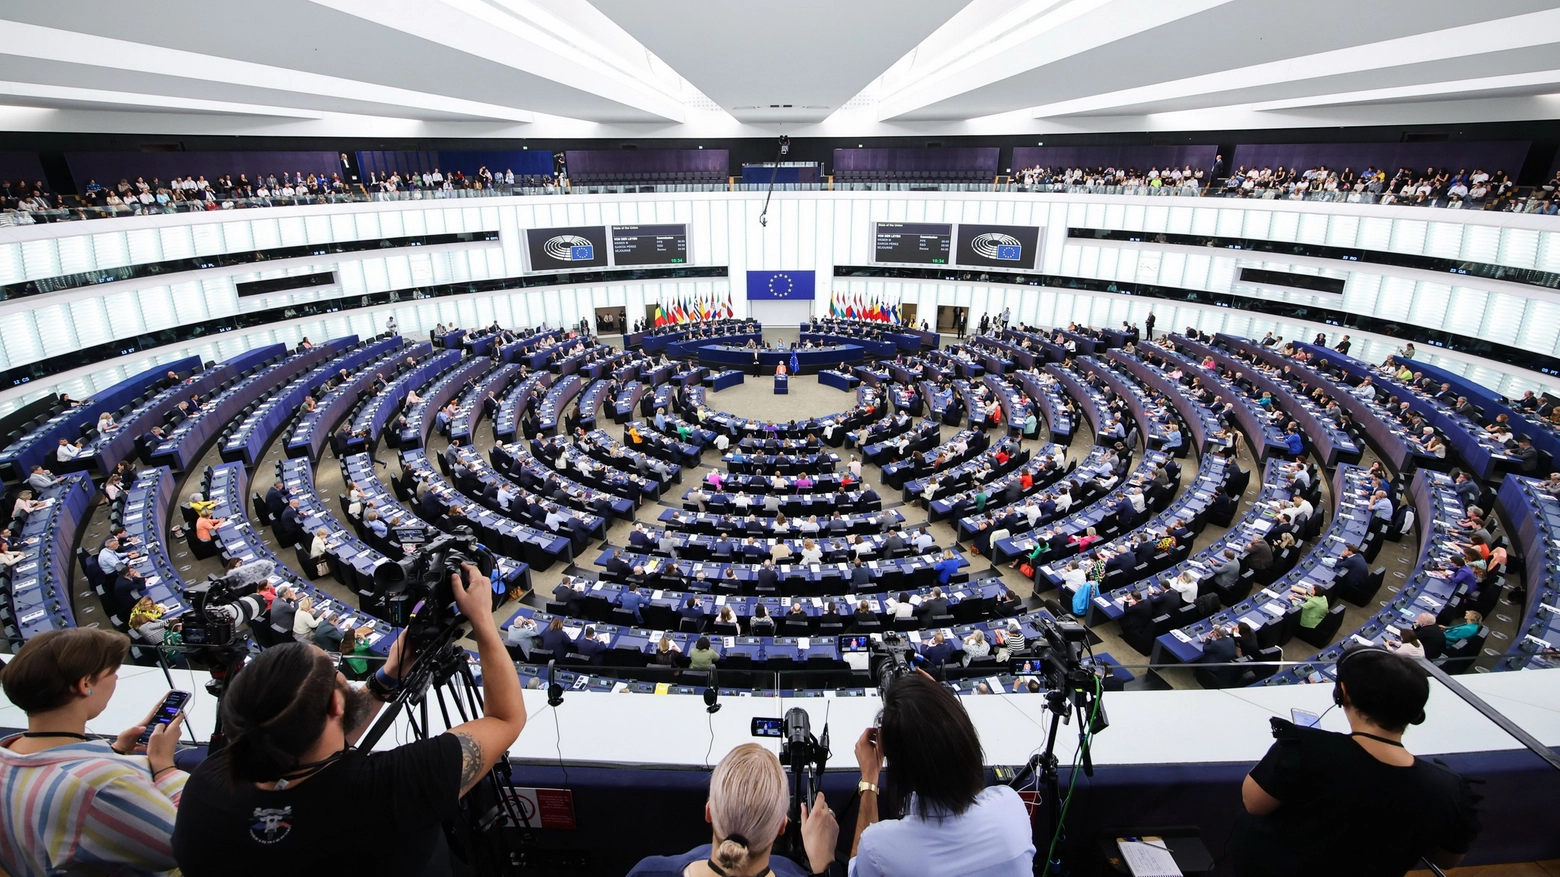 L'aula del Parlamento europeo (ImagoEconomica)